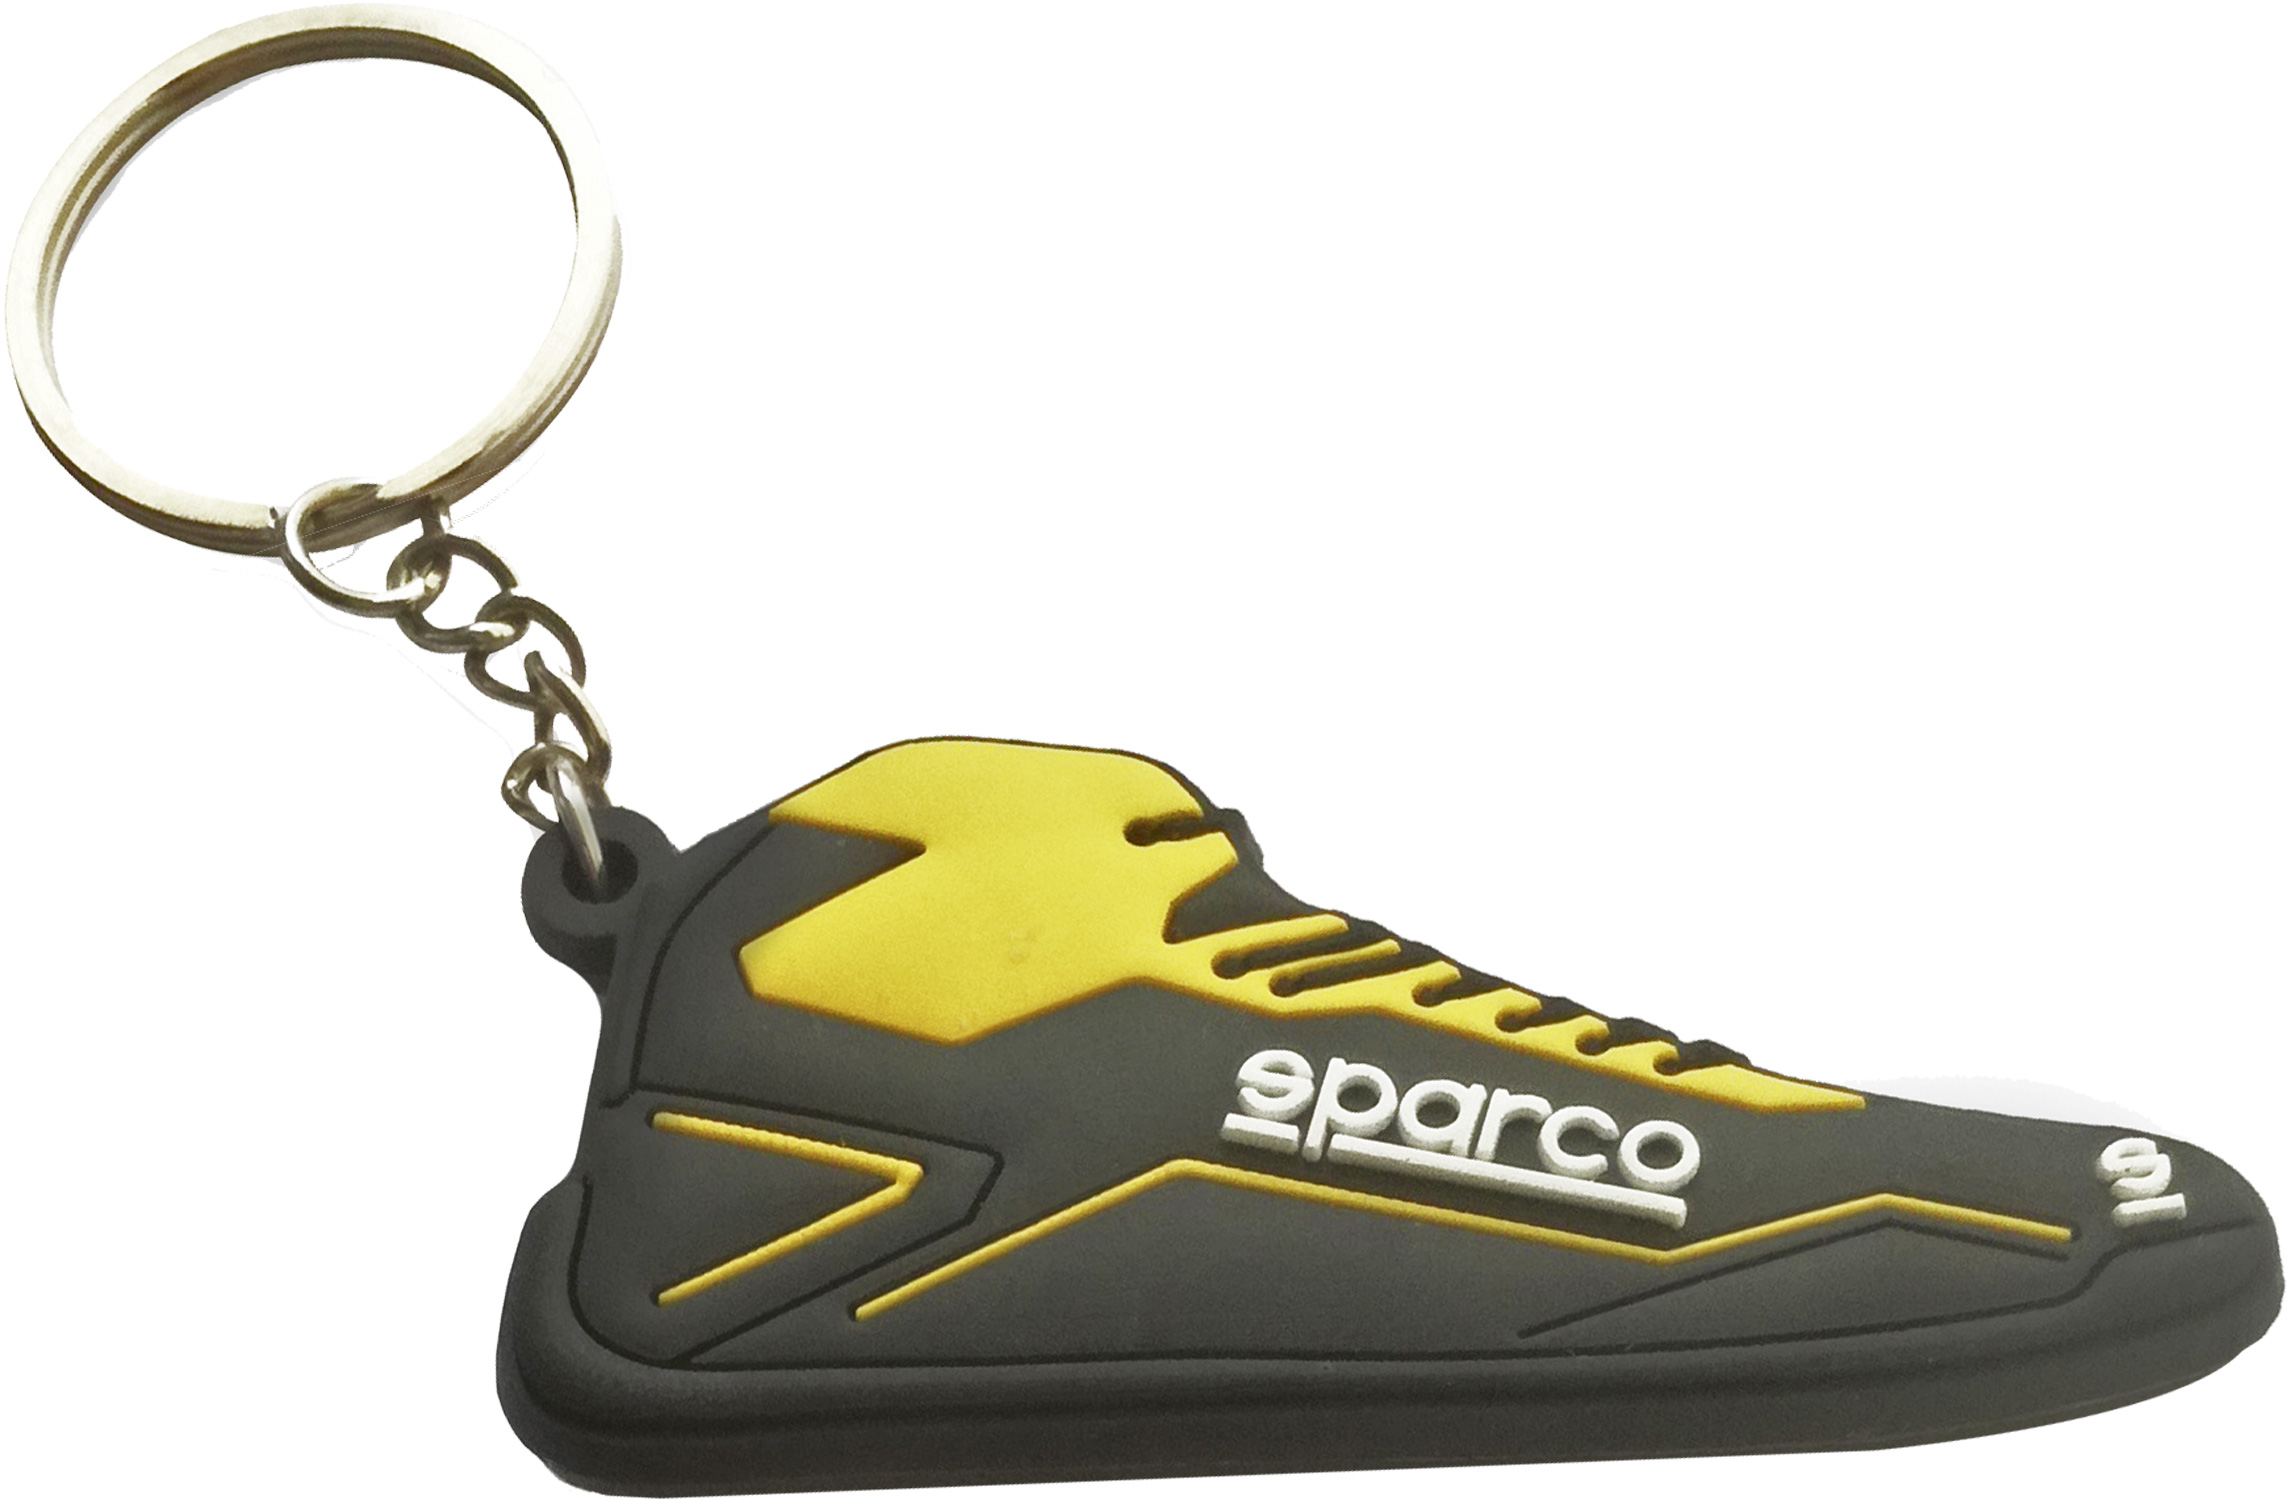 Sparco Schlüsselanhänger, schwarz/gelb